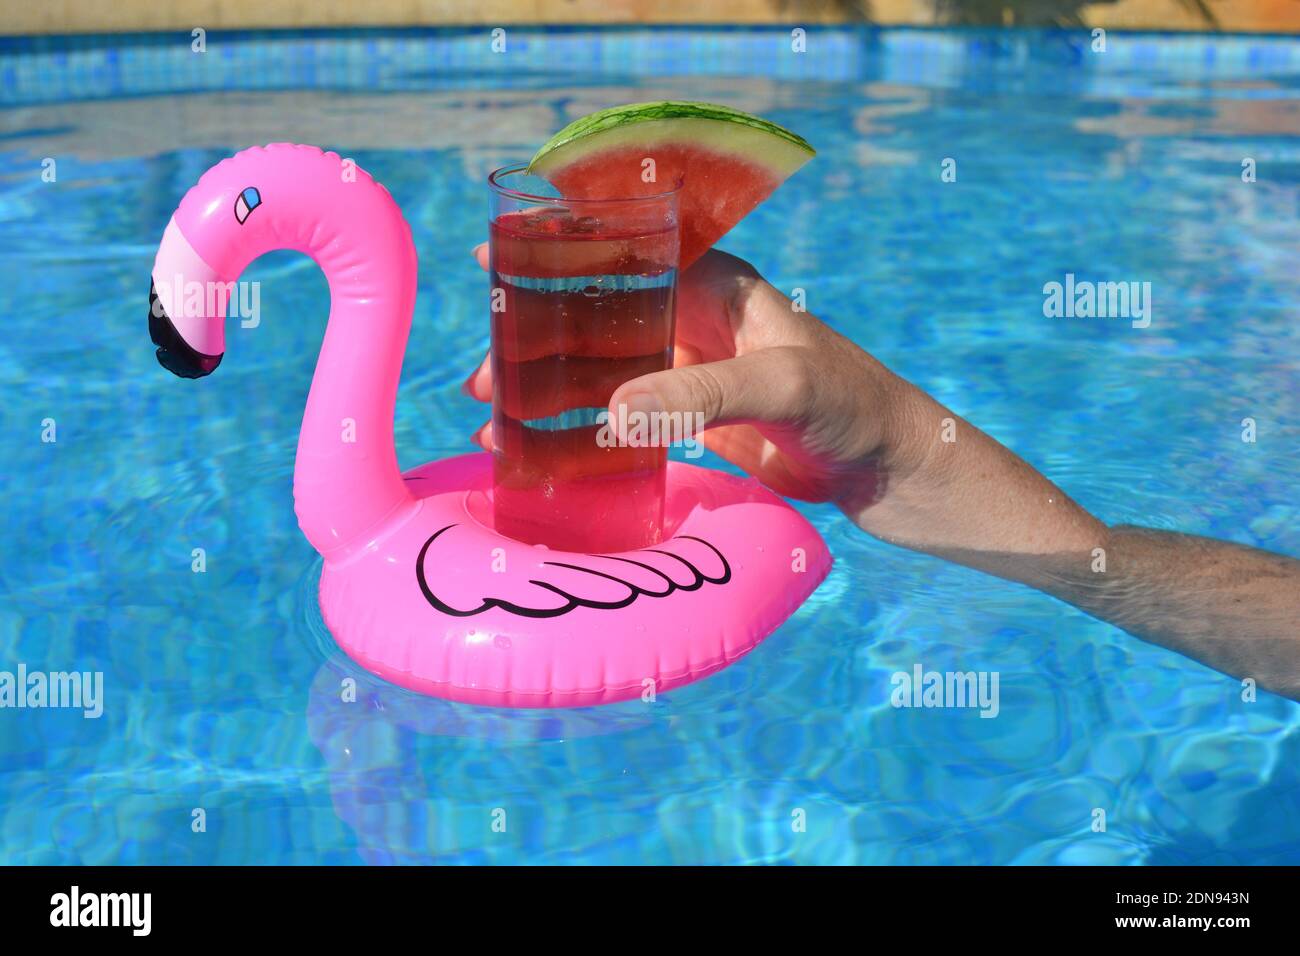 Frau, die einen Cocktail hält, schwimmt in einem aufblasbaren Pink Flamingo  Getränkehalter in EINEM Swimmingpool Stockfotografie - Alamy